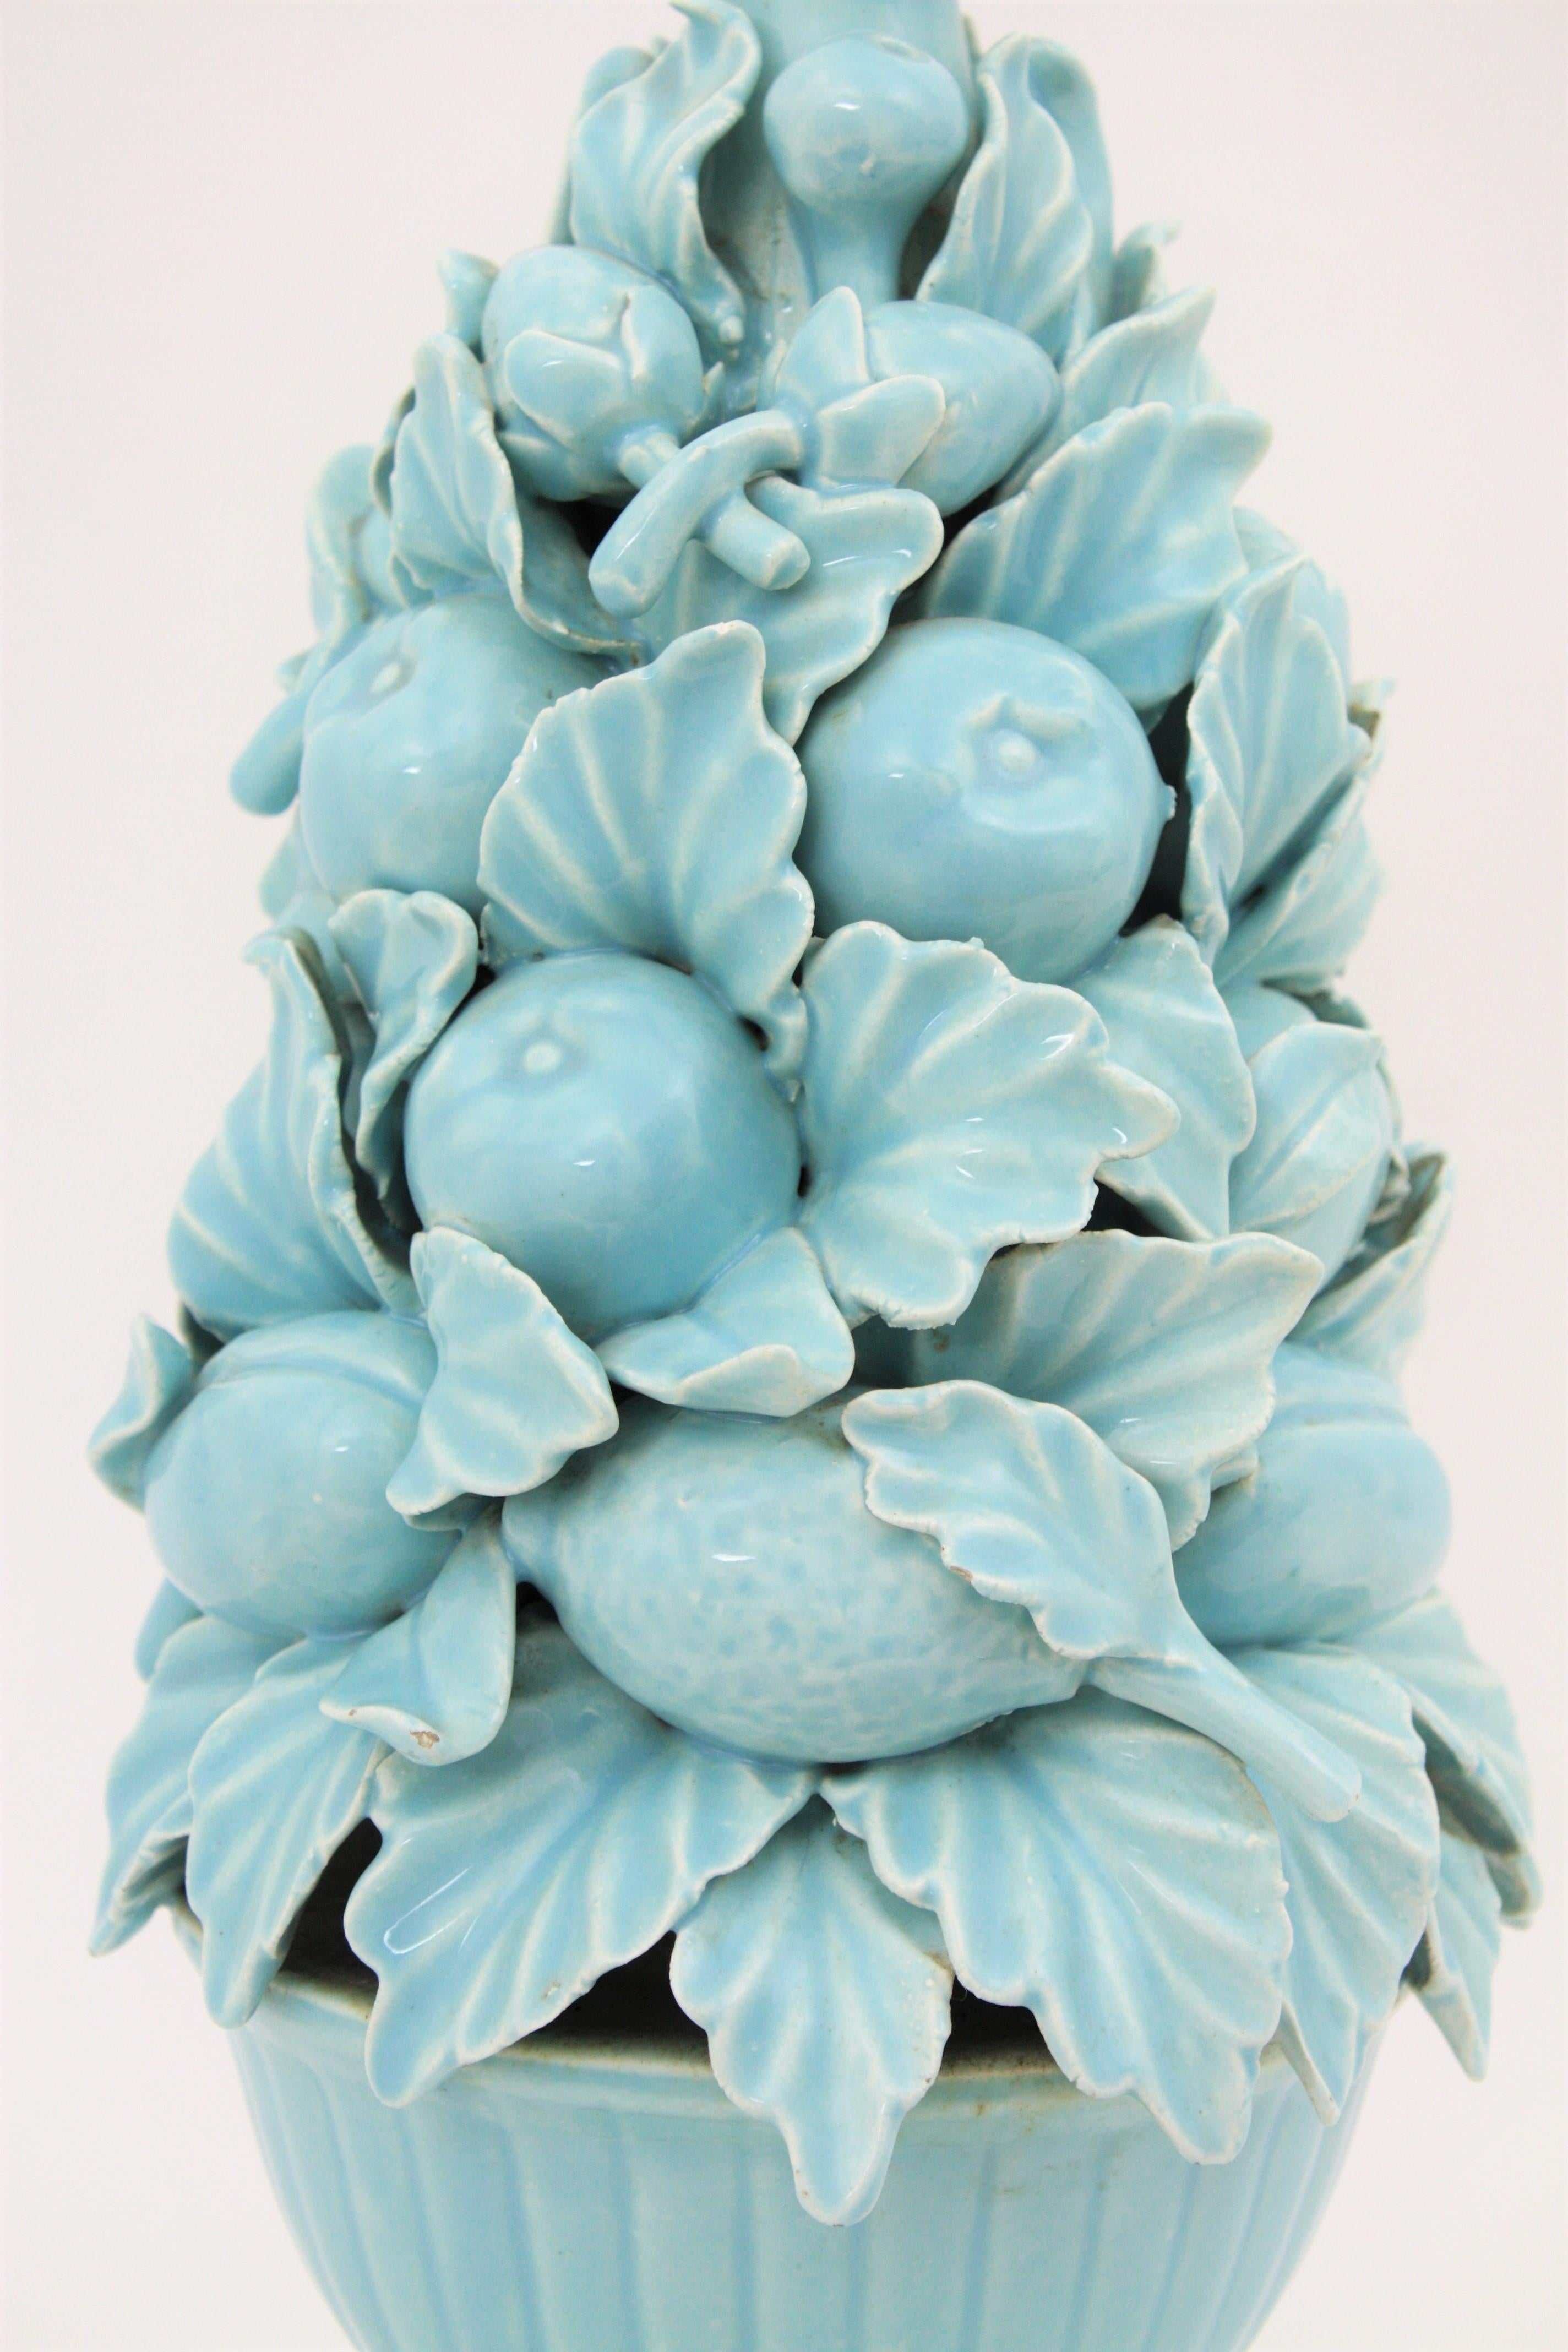 Spanish 1960s Majolica Blue Glazed Manises Ceramic Fruit Table Lamp 2